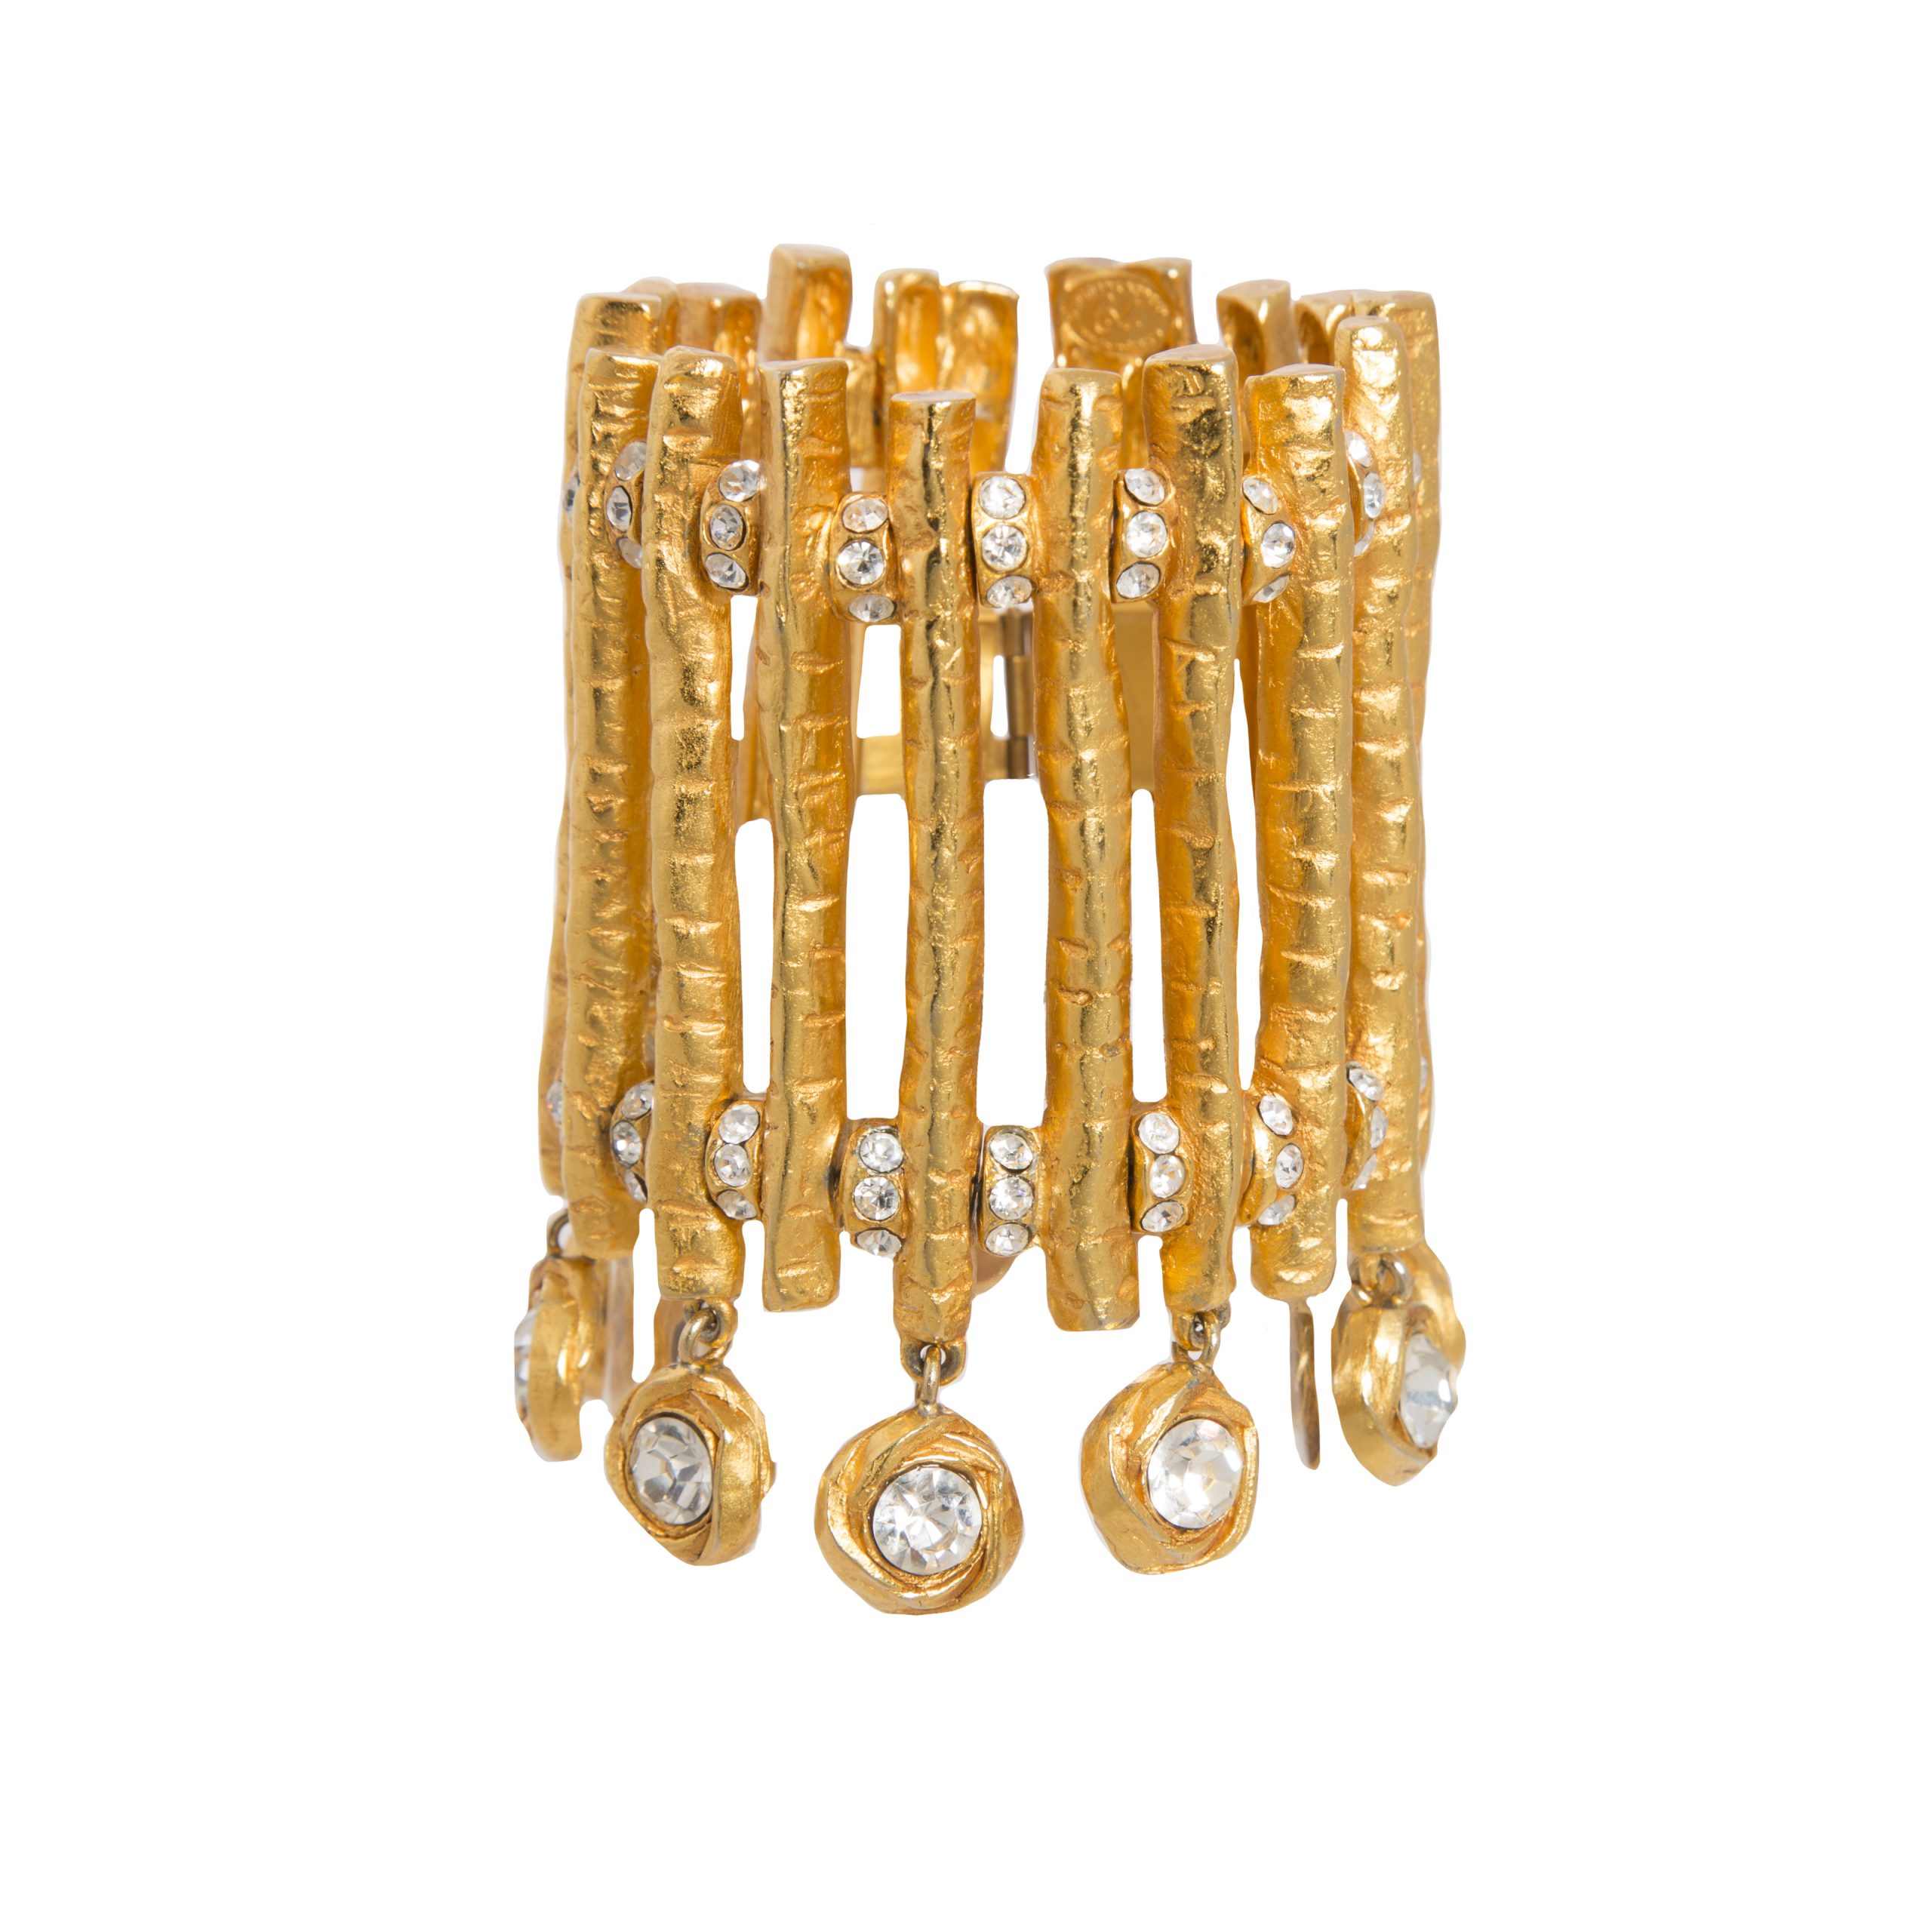 Vintage gold statement bracelet with crystals